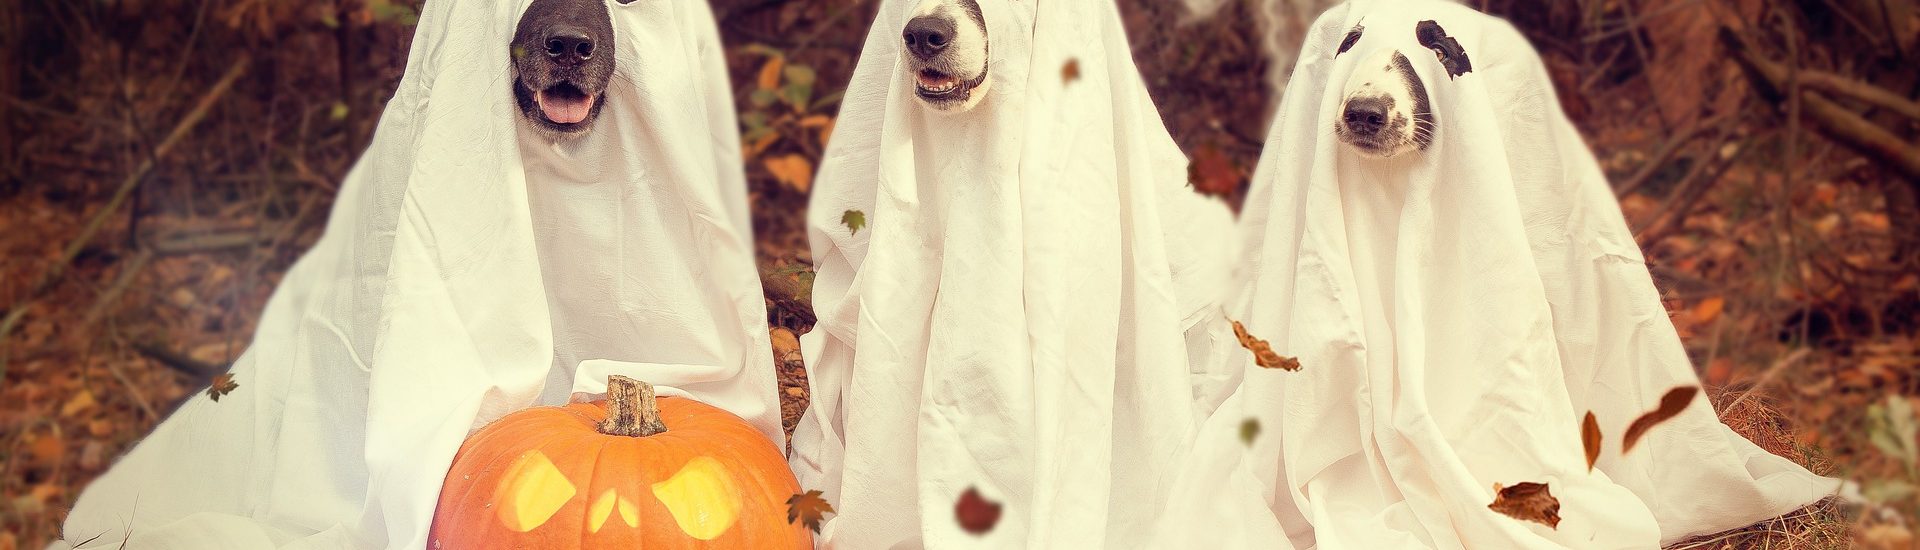 Ambiance Halloween: chiens fantômes et citrouille